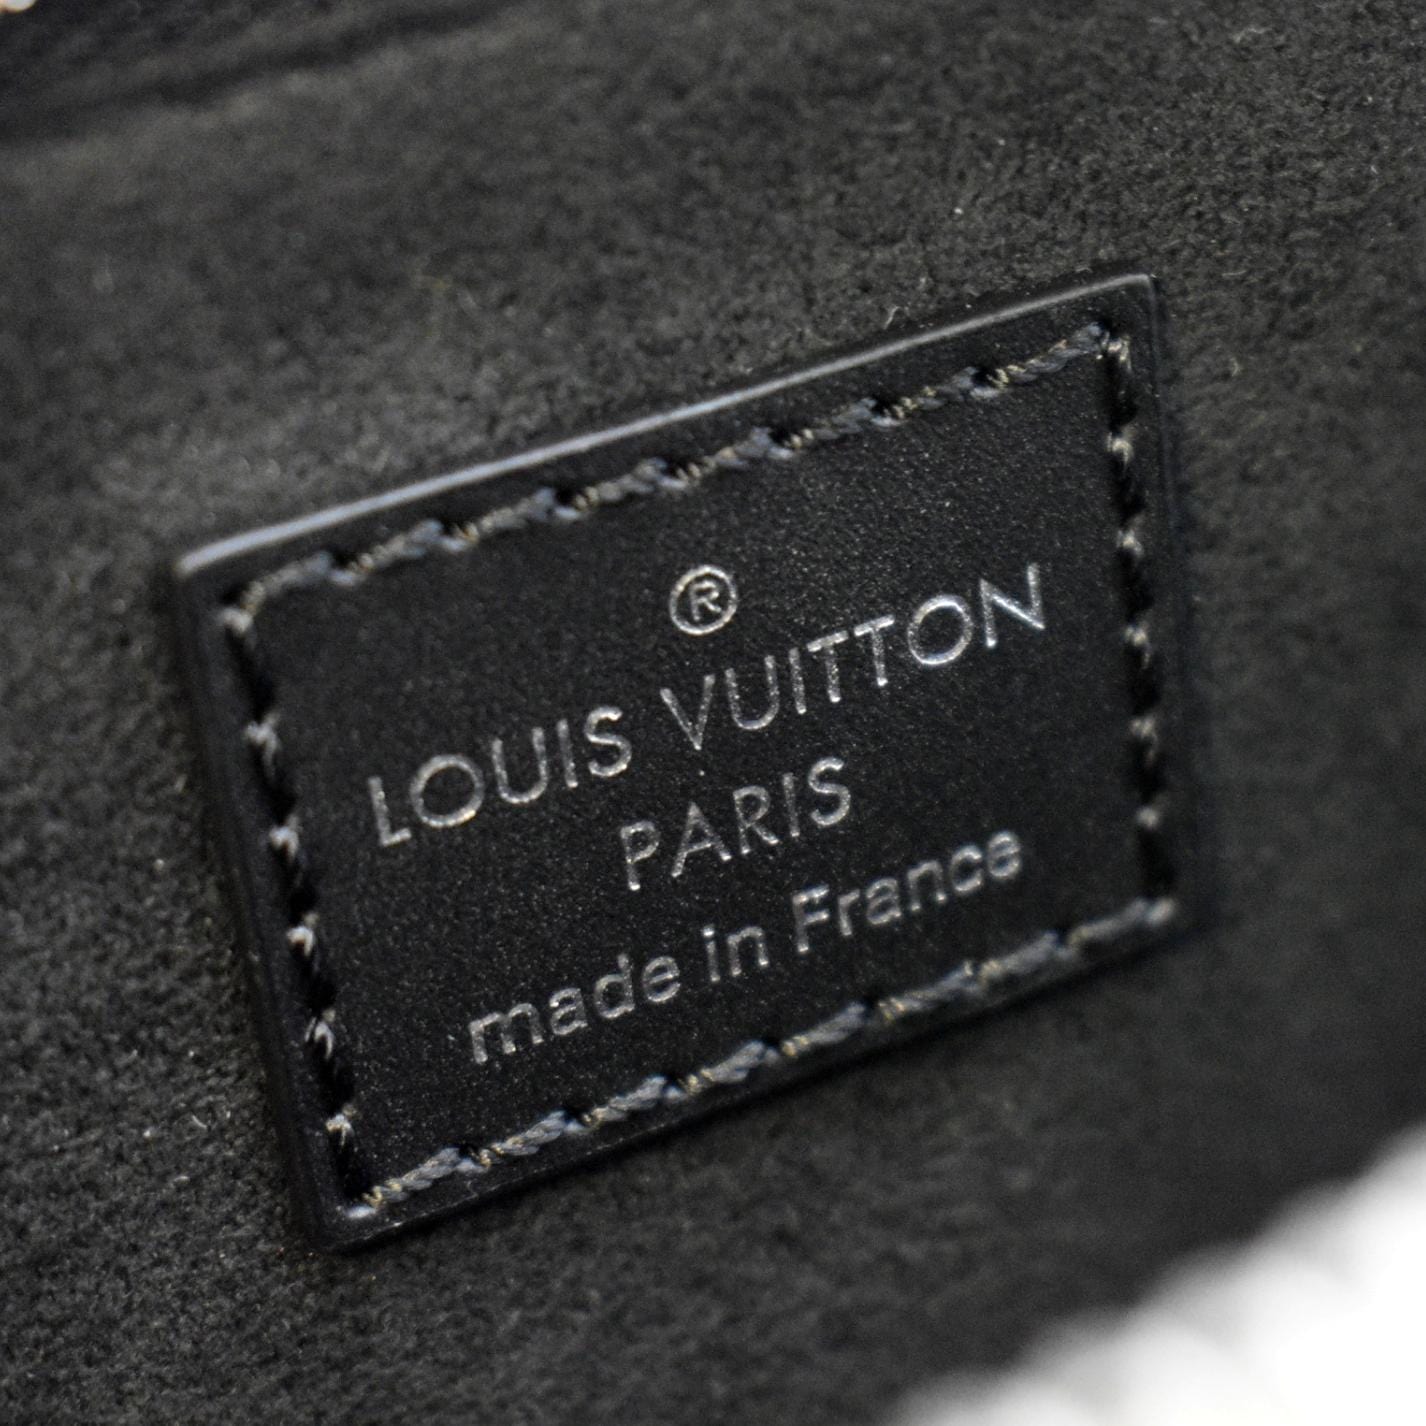 LOUIS VUITTON Clip It Bracelet Black Leather. Size 21